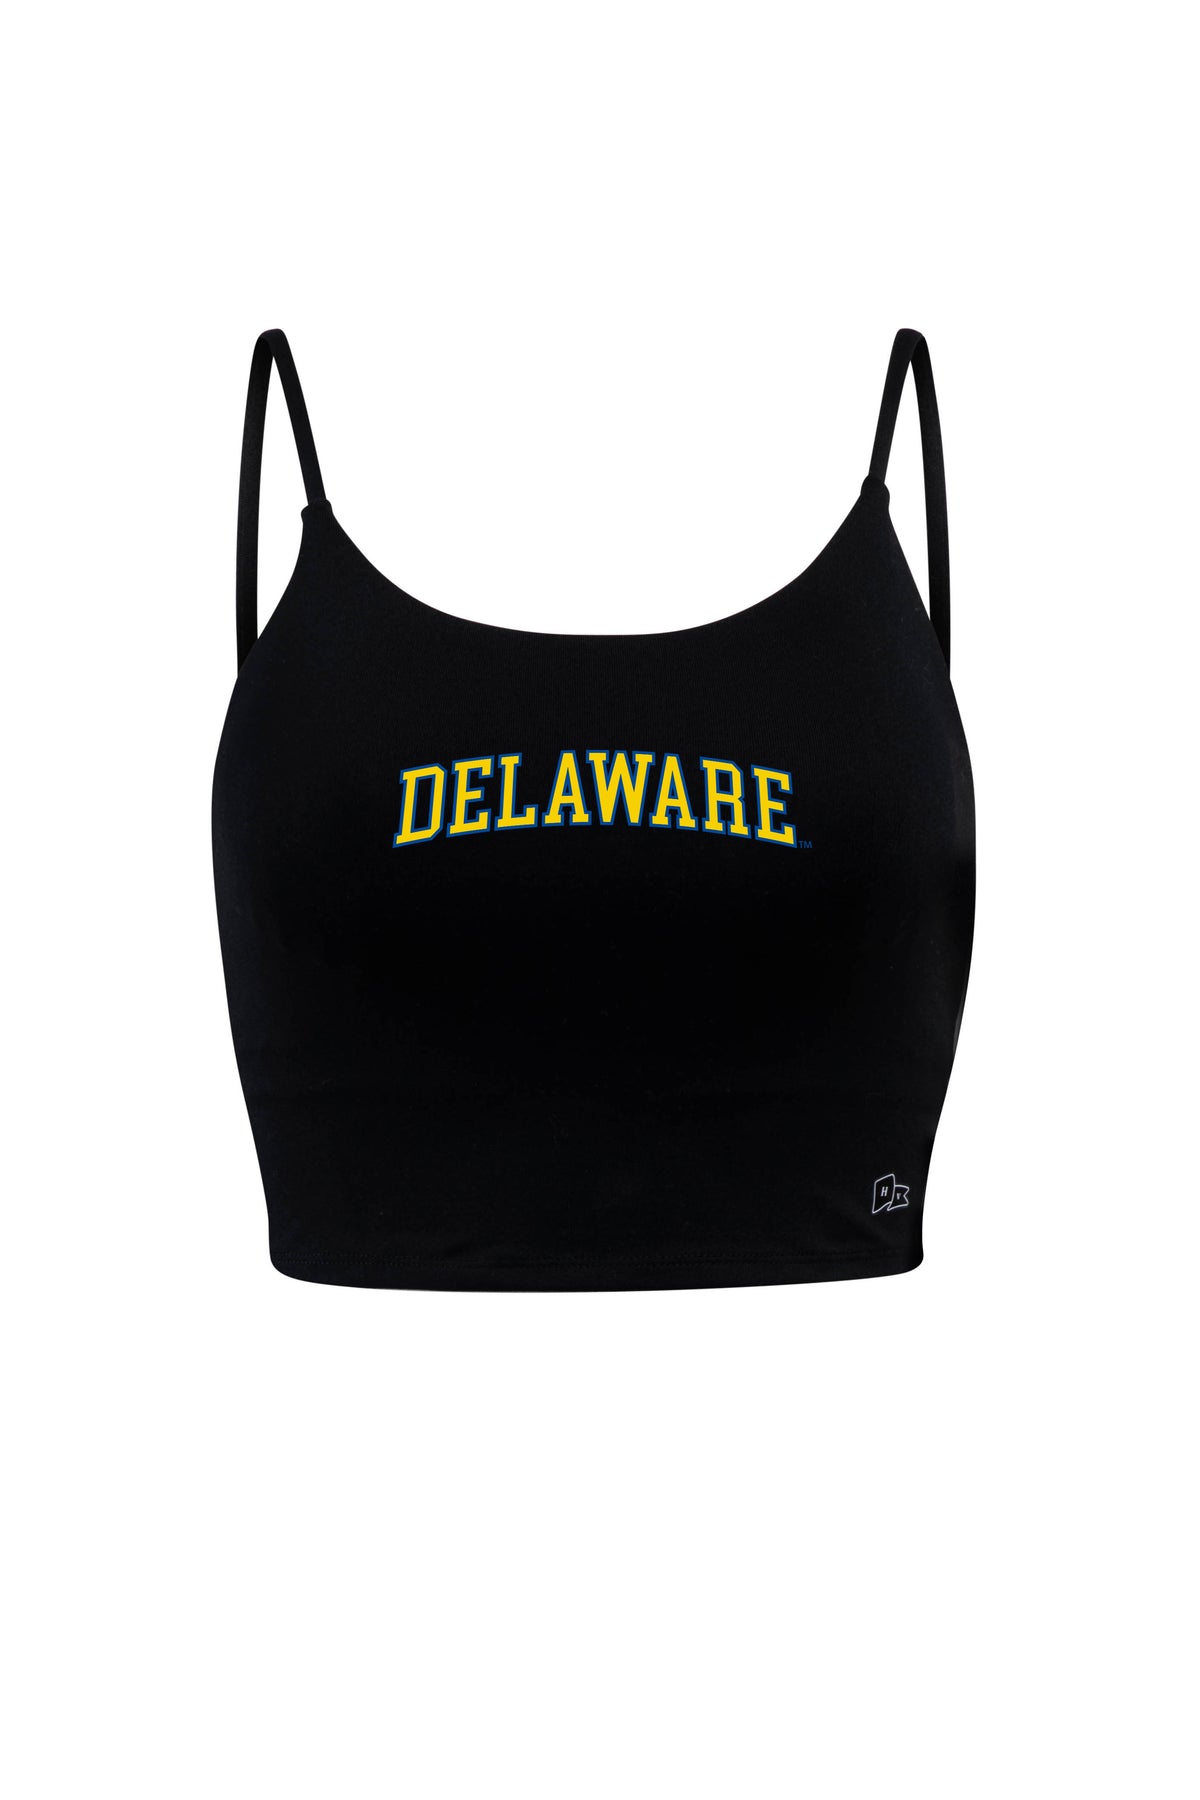 University of Delaware Bra Tank Top